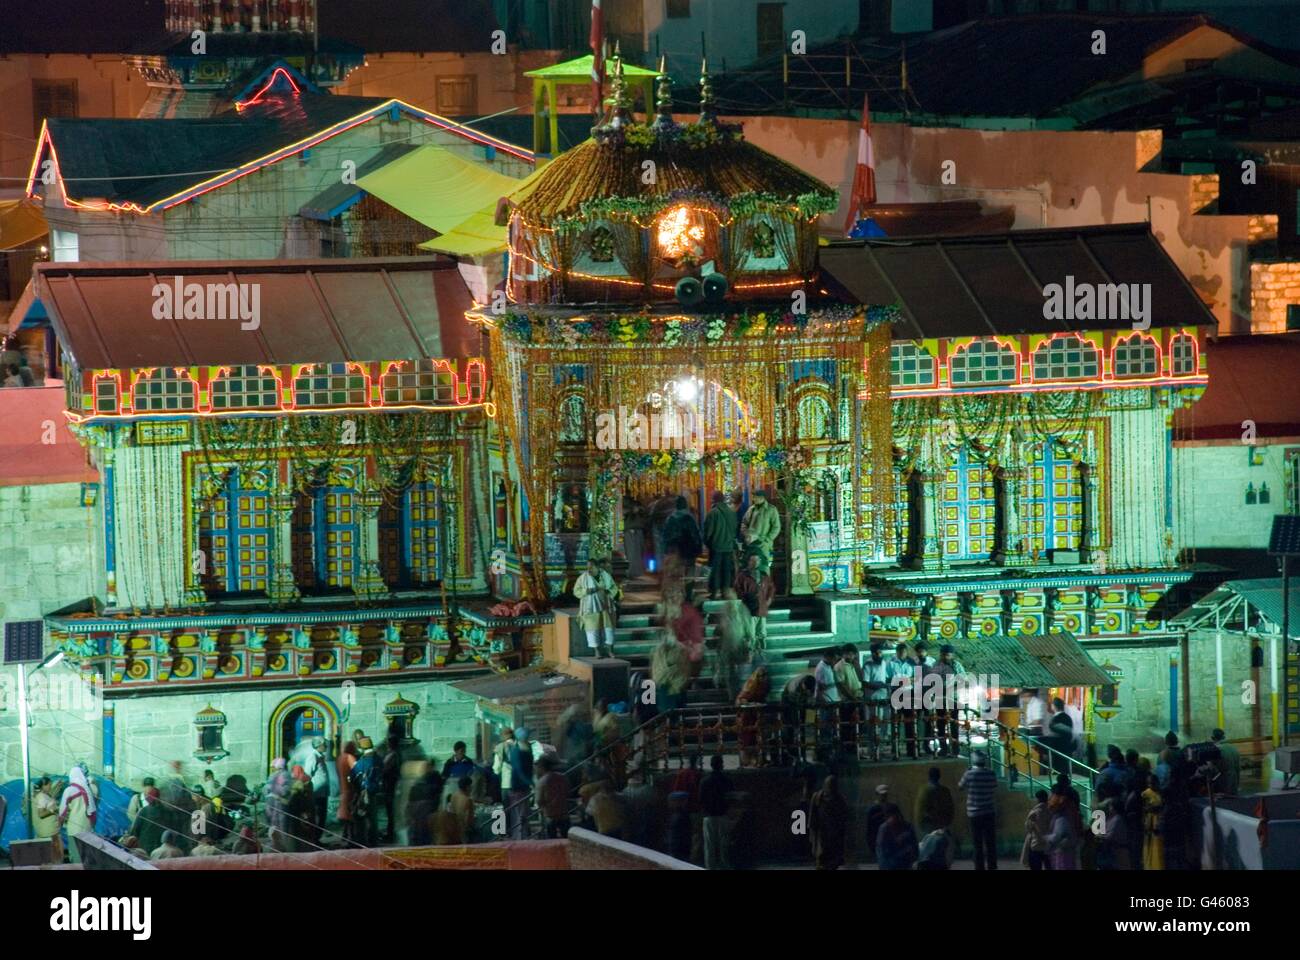 Badrinath, uno de los santos el centro de peregrinación para los hindúes, Uttarakhand, India Foto de stock